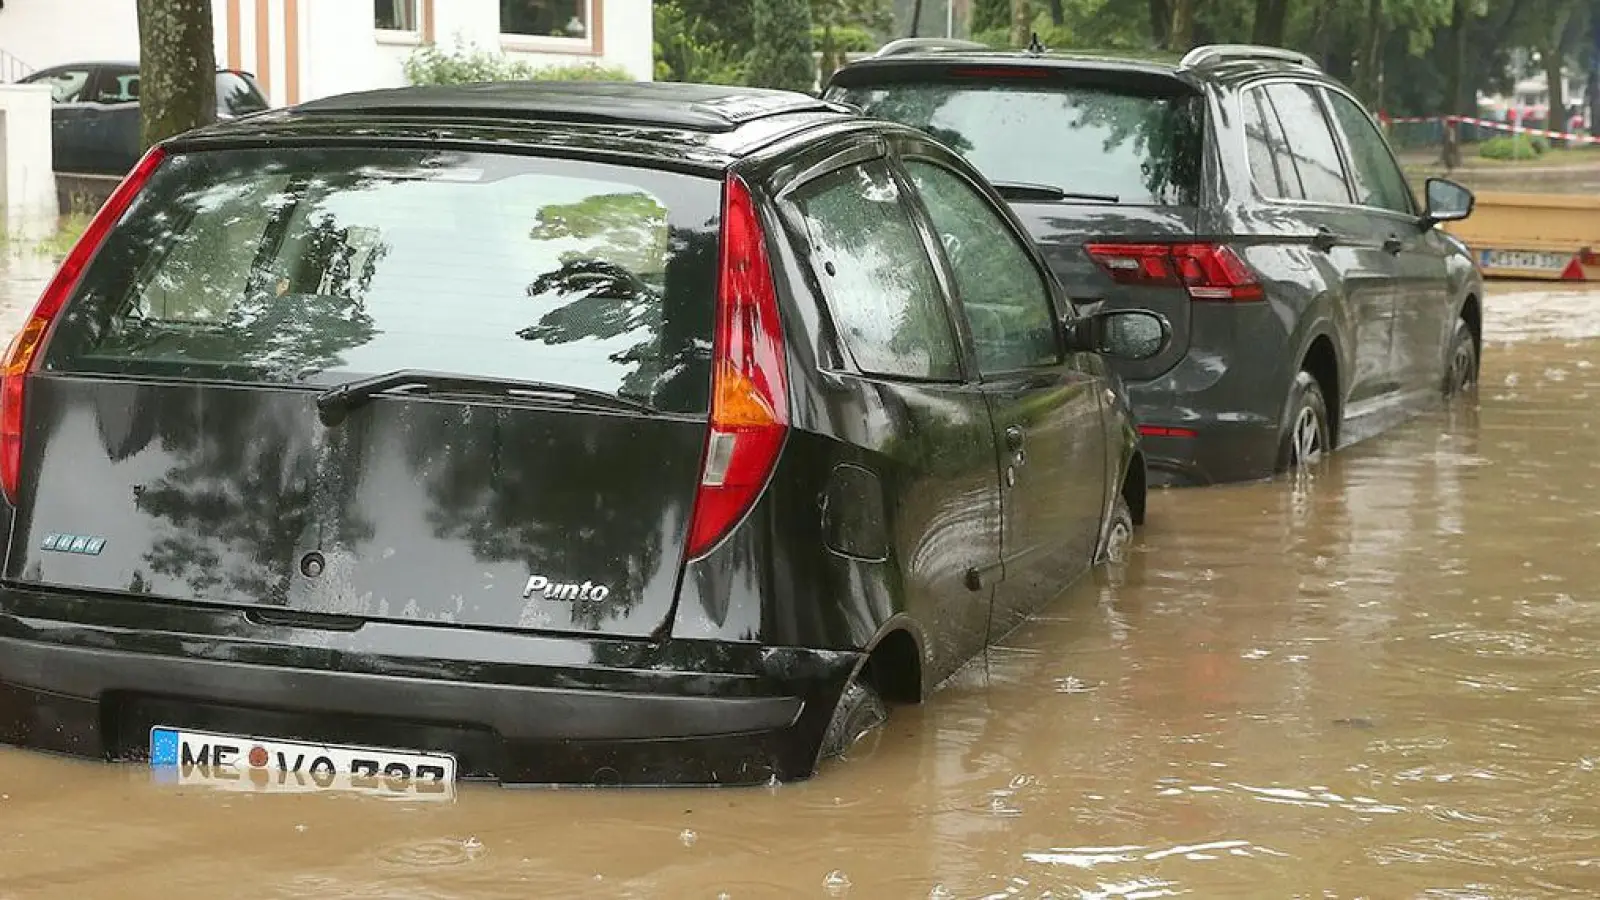 Für Hochwasser-Schäden an Autos kommt in der Regel die Teilkaskoversicherung auf. (Foto: dpa/David Young)